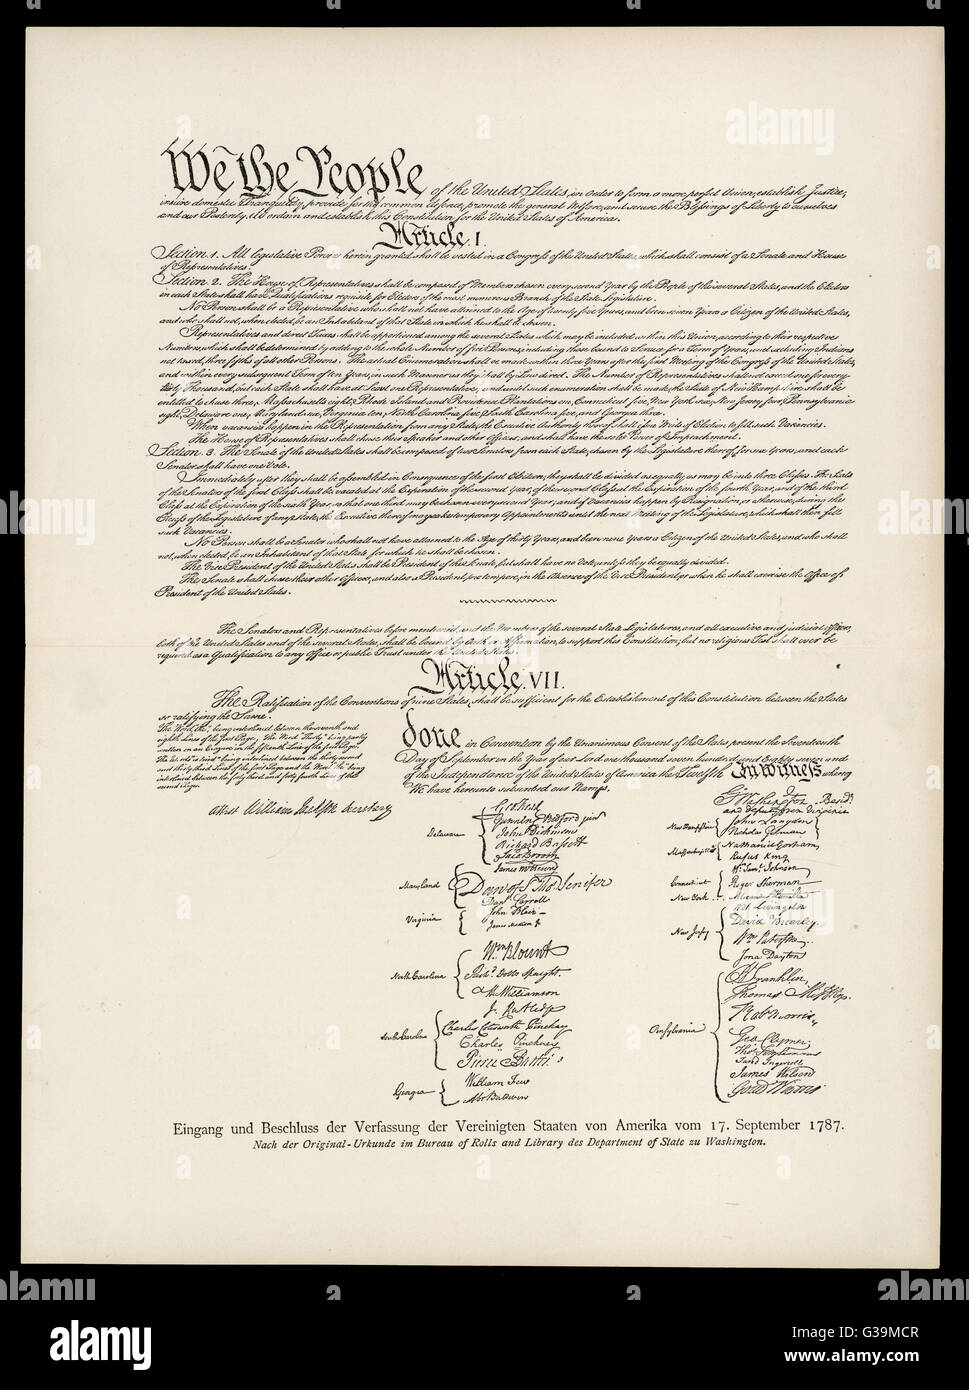 Verfassung von der Vereinigte Staaten erarbeitet von 55 Delegierten der verfassungsgebenden Versammlung in Philadelphia Datum: 17. September 1787 Stockfoto